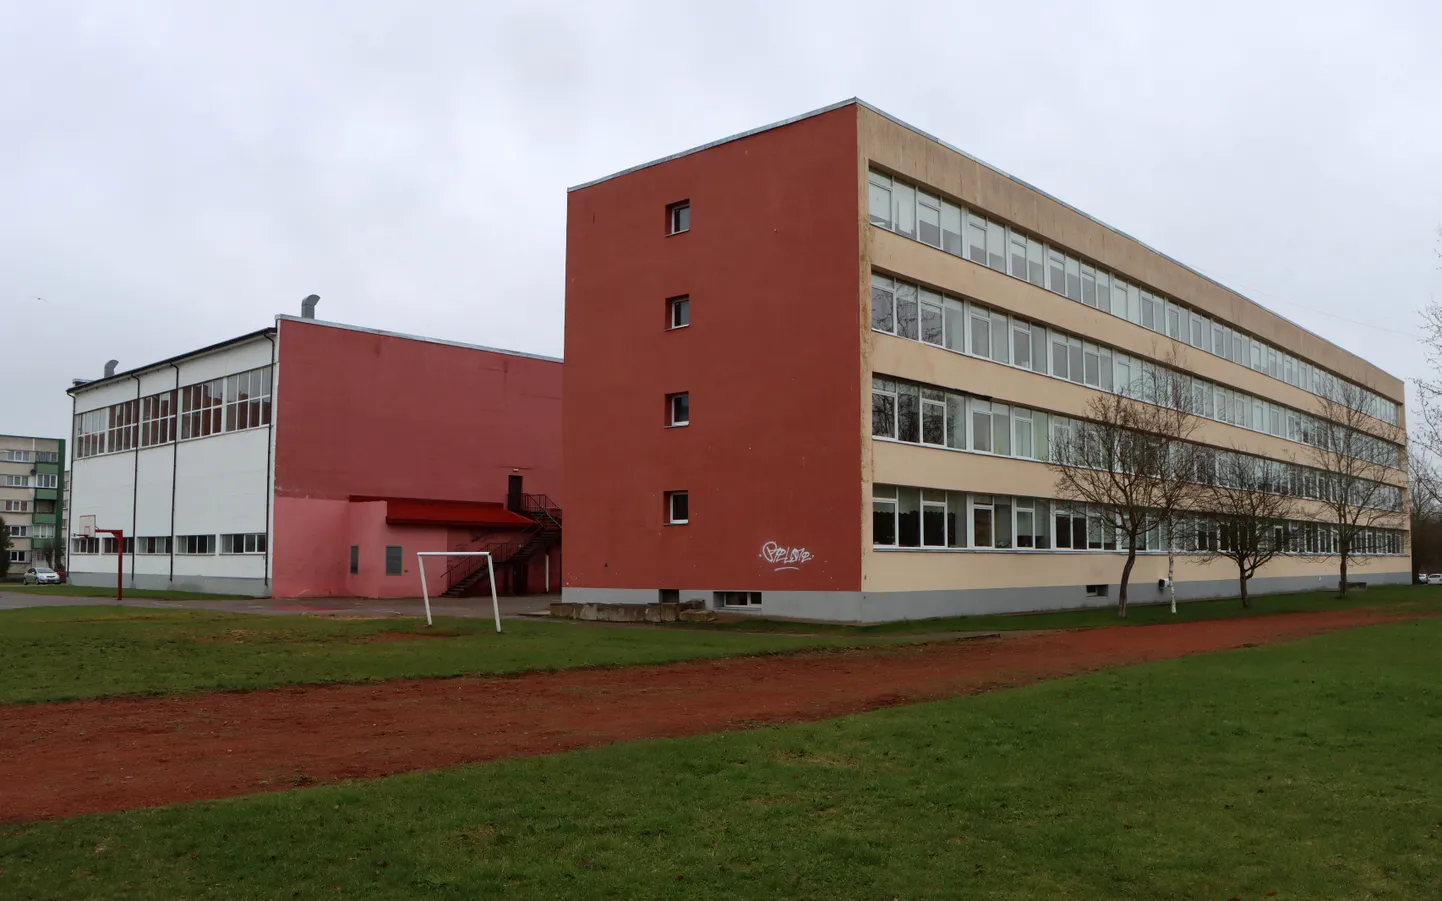 Maleva põhikool, mis on varem kakskeelse koolina olnud ka Kohtla-Järve 17. keskkool ja ühisgümnaasium, läheb uuest õppeaastast suuremas osas üle eestikeelsele õppele.